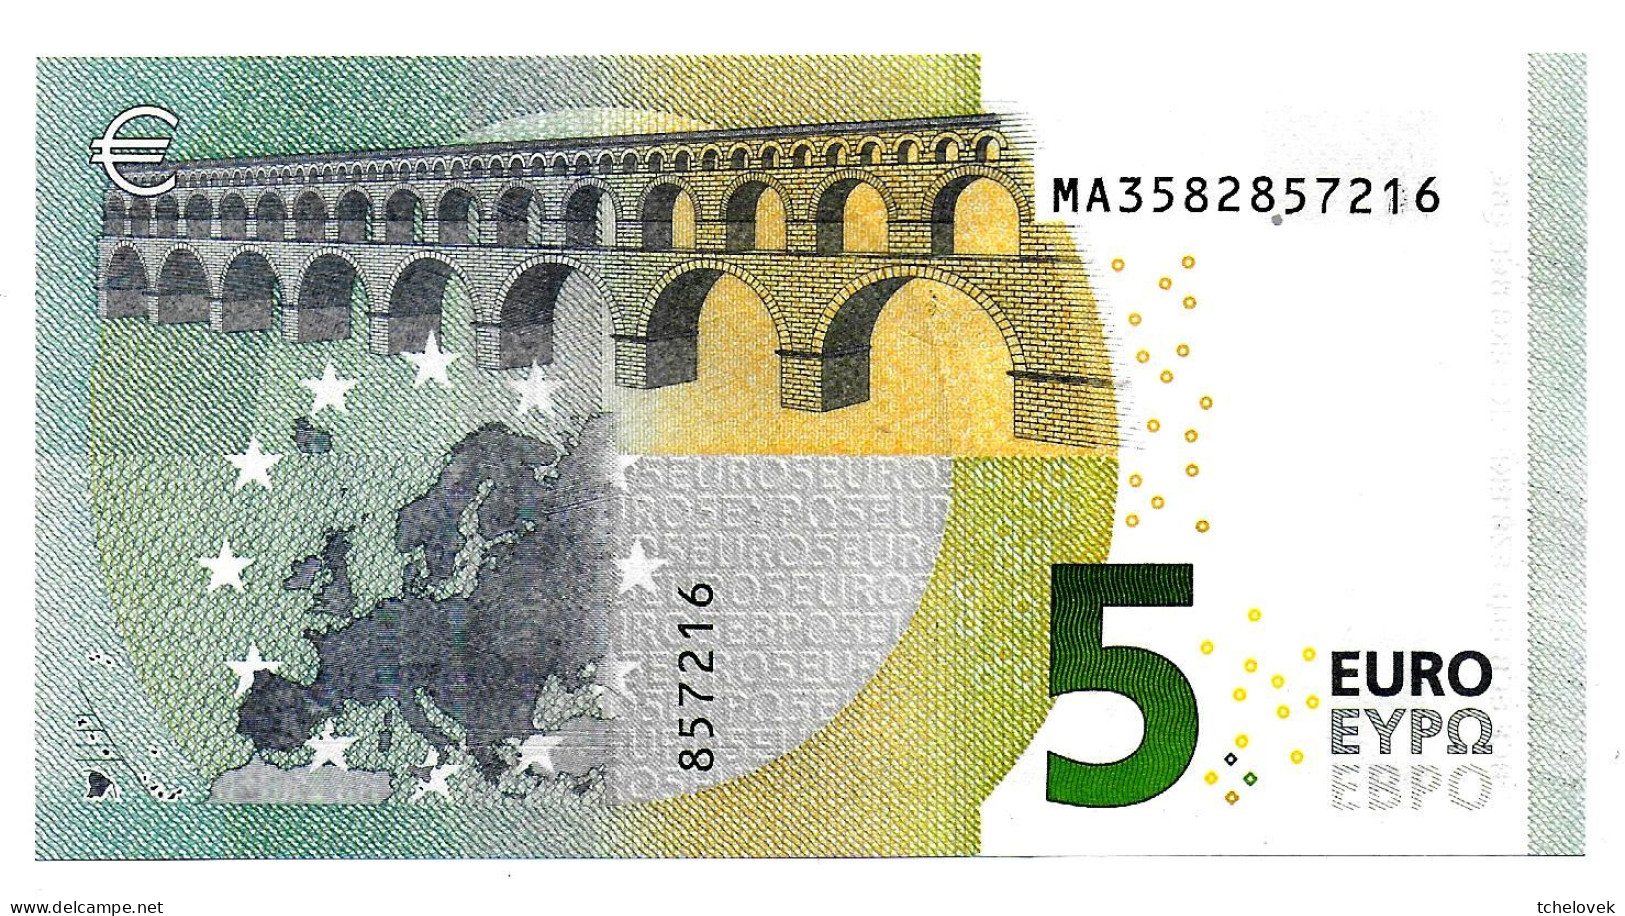 (Billets). 5 Euros 2013 Serie MA, M005G1 Signature 3 Mario Draghi N° MA 3582857216 UNC - 5 Euro